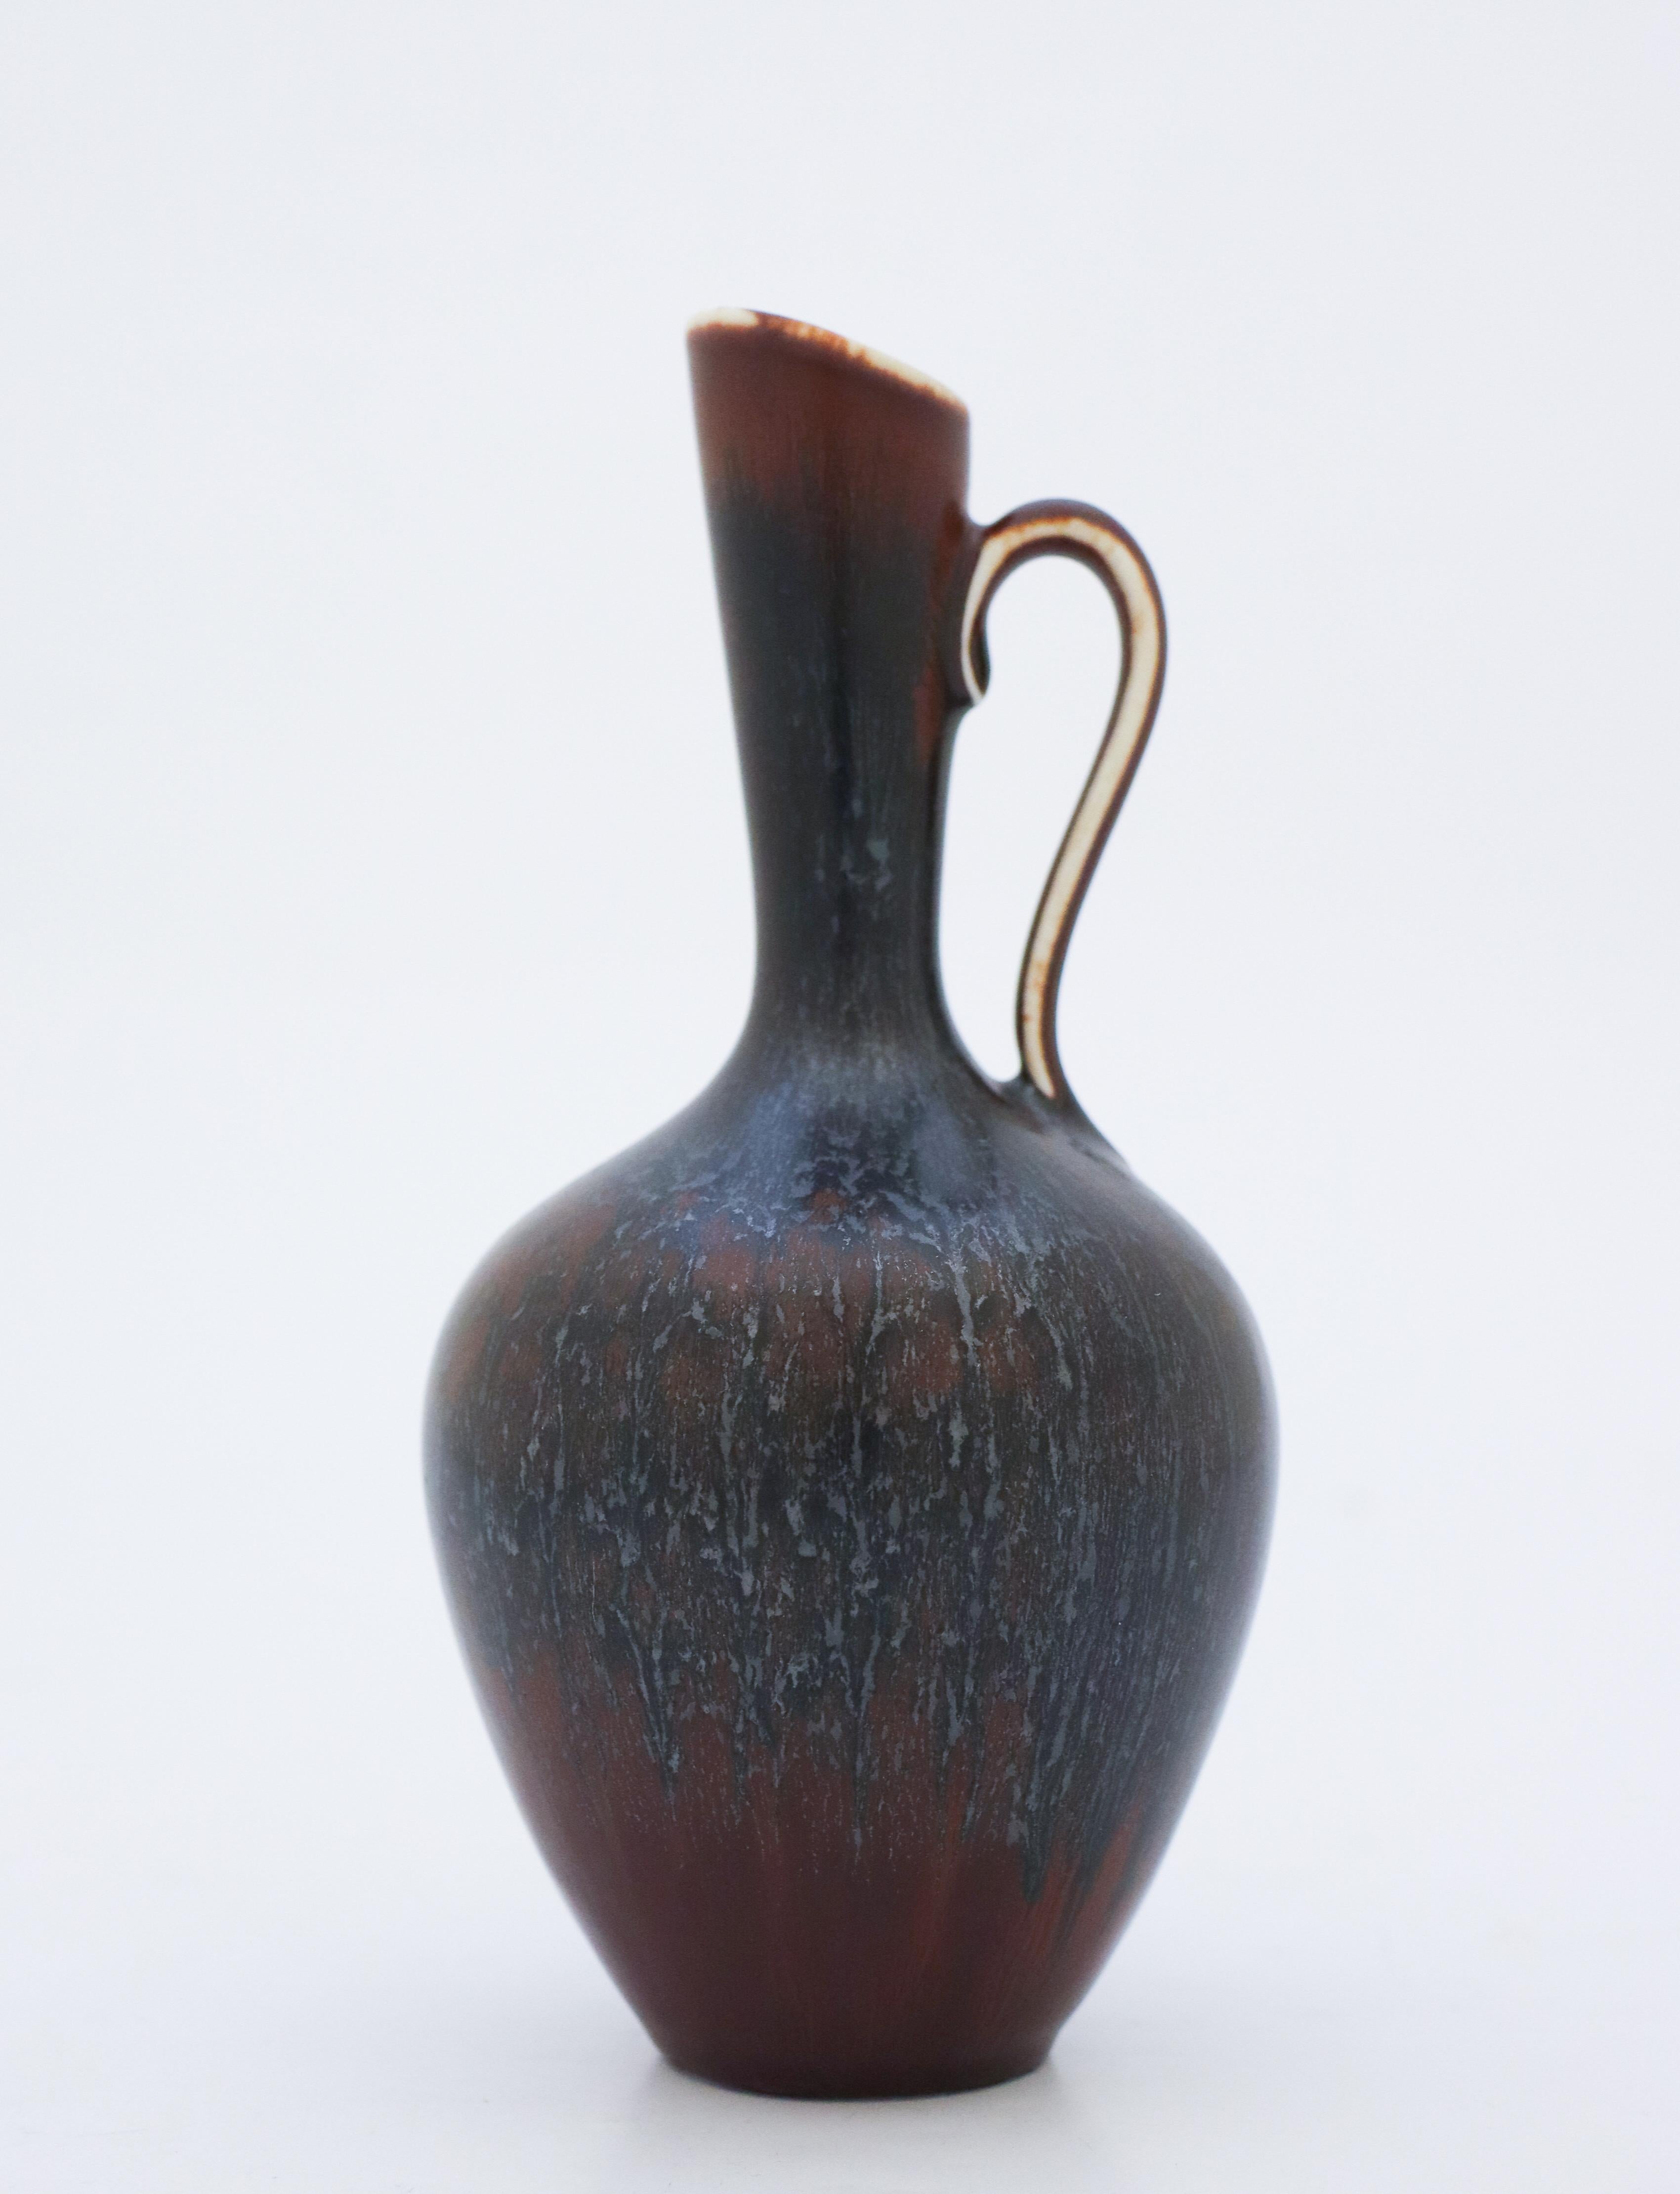 Eine dunkle Vase (schwarz und braun) mit einer schönen Glasur, entworfen von Gunnar Nylund in Rörstrand, 17,5 cm hoch. Es ist in neuwertigem Zustand und als 1. Qualität gekennzeichnet. 

Gunnar Nylund wurde 1904 in Paris geboren. Seine Eltern